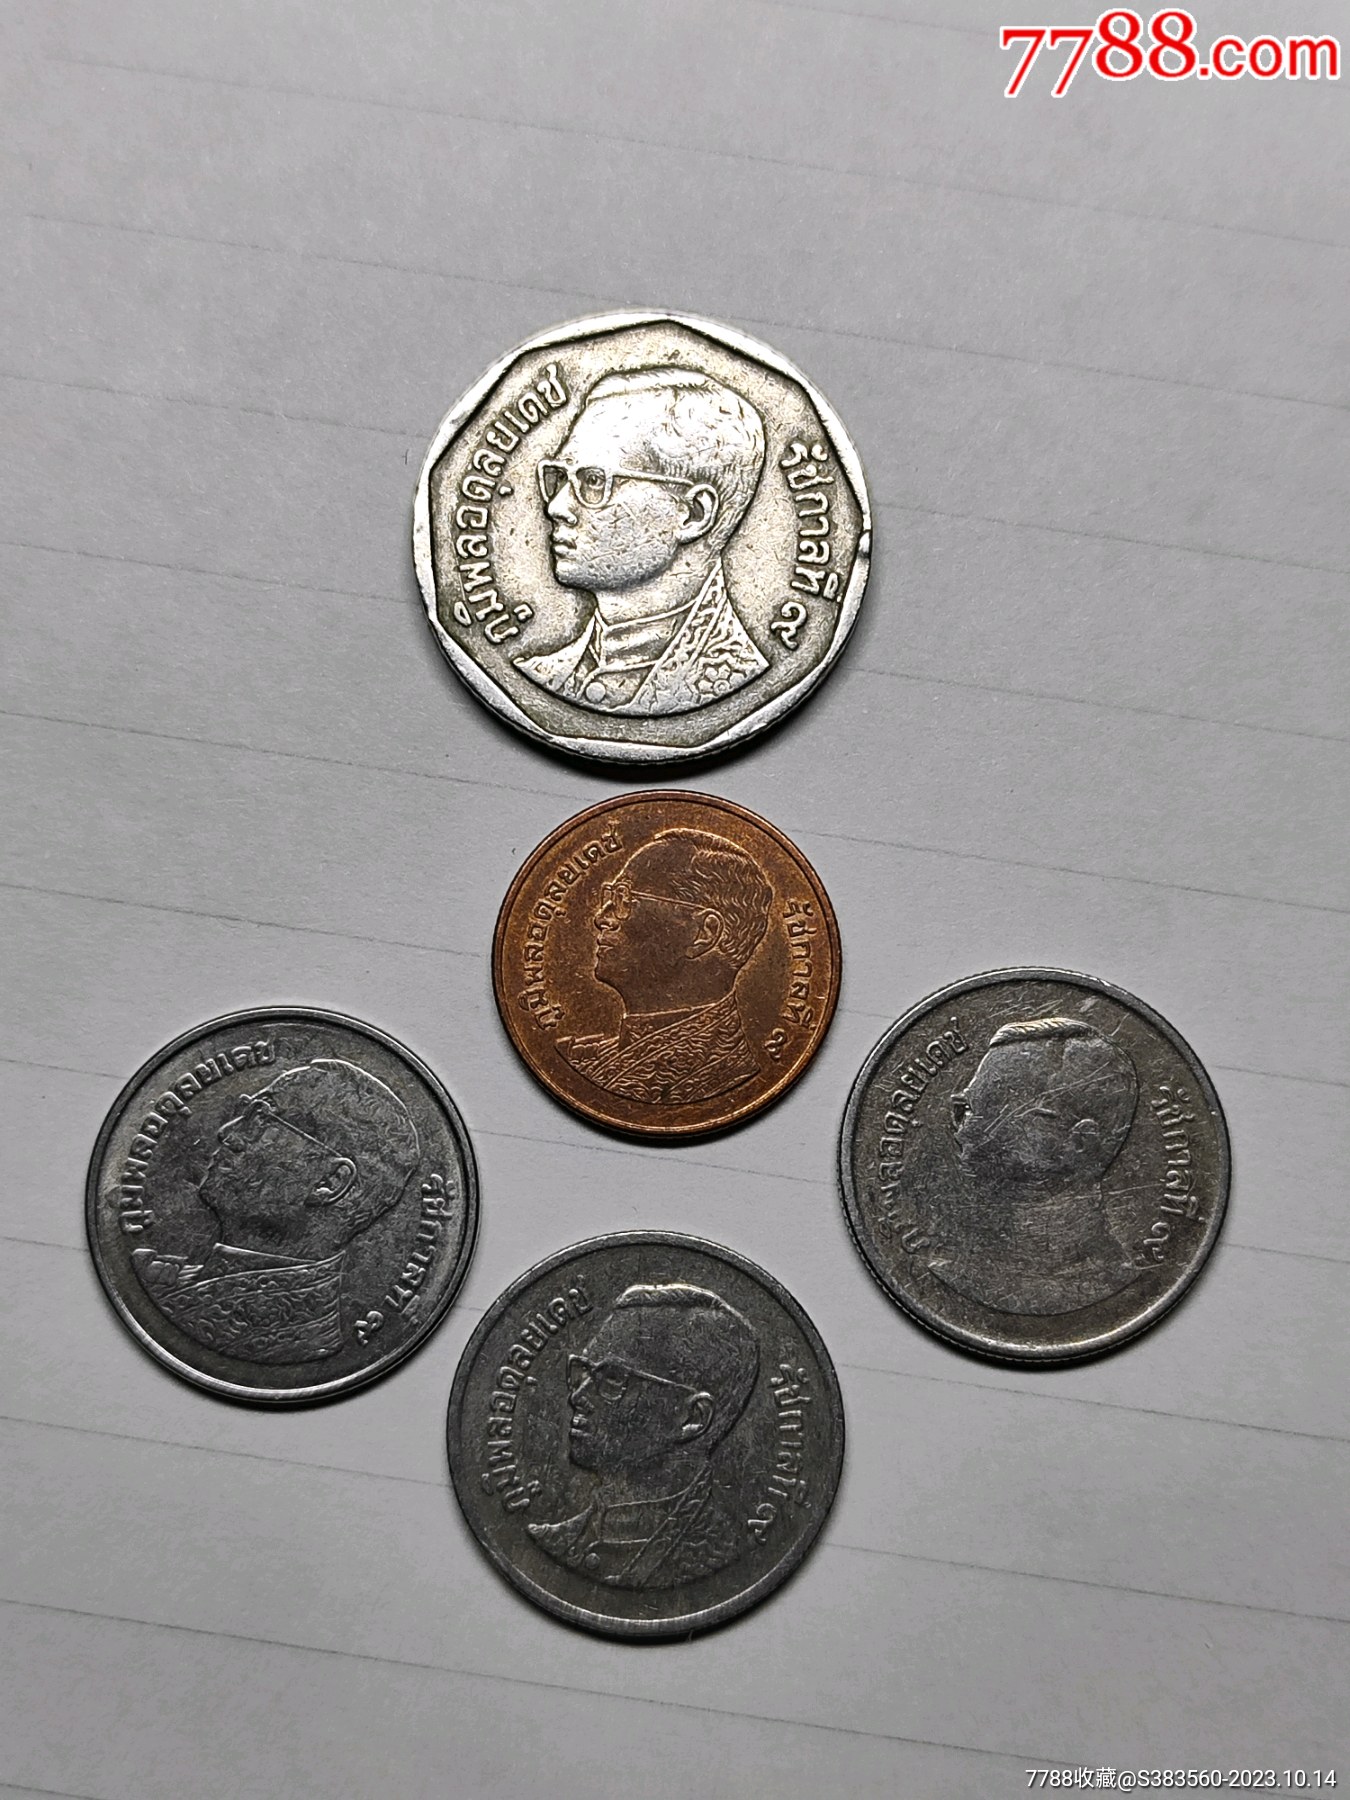 泰国钞票和硬币 库存图片. 图片 包括有 班珠尔, 有选择性, 背包, 商业, 经济, 财富, 查出, 货币 - 32371603